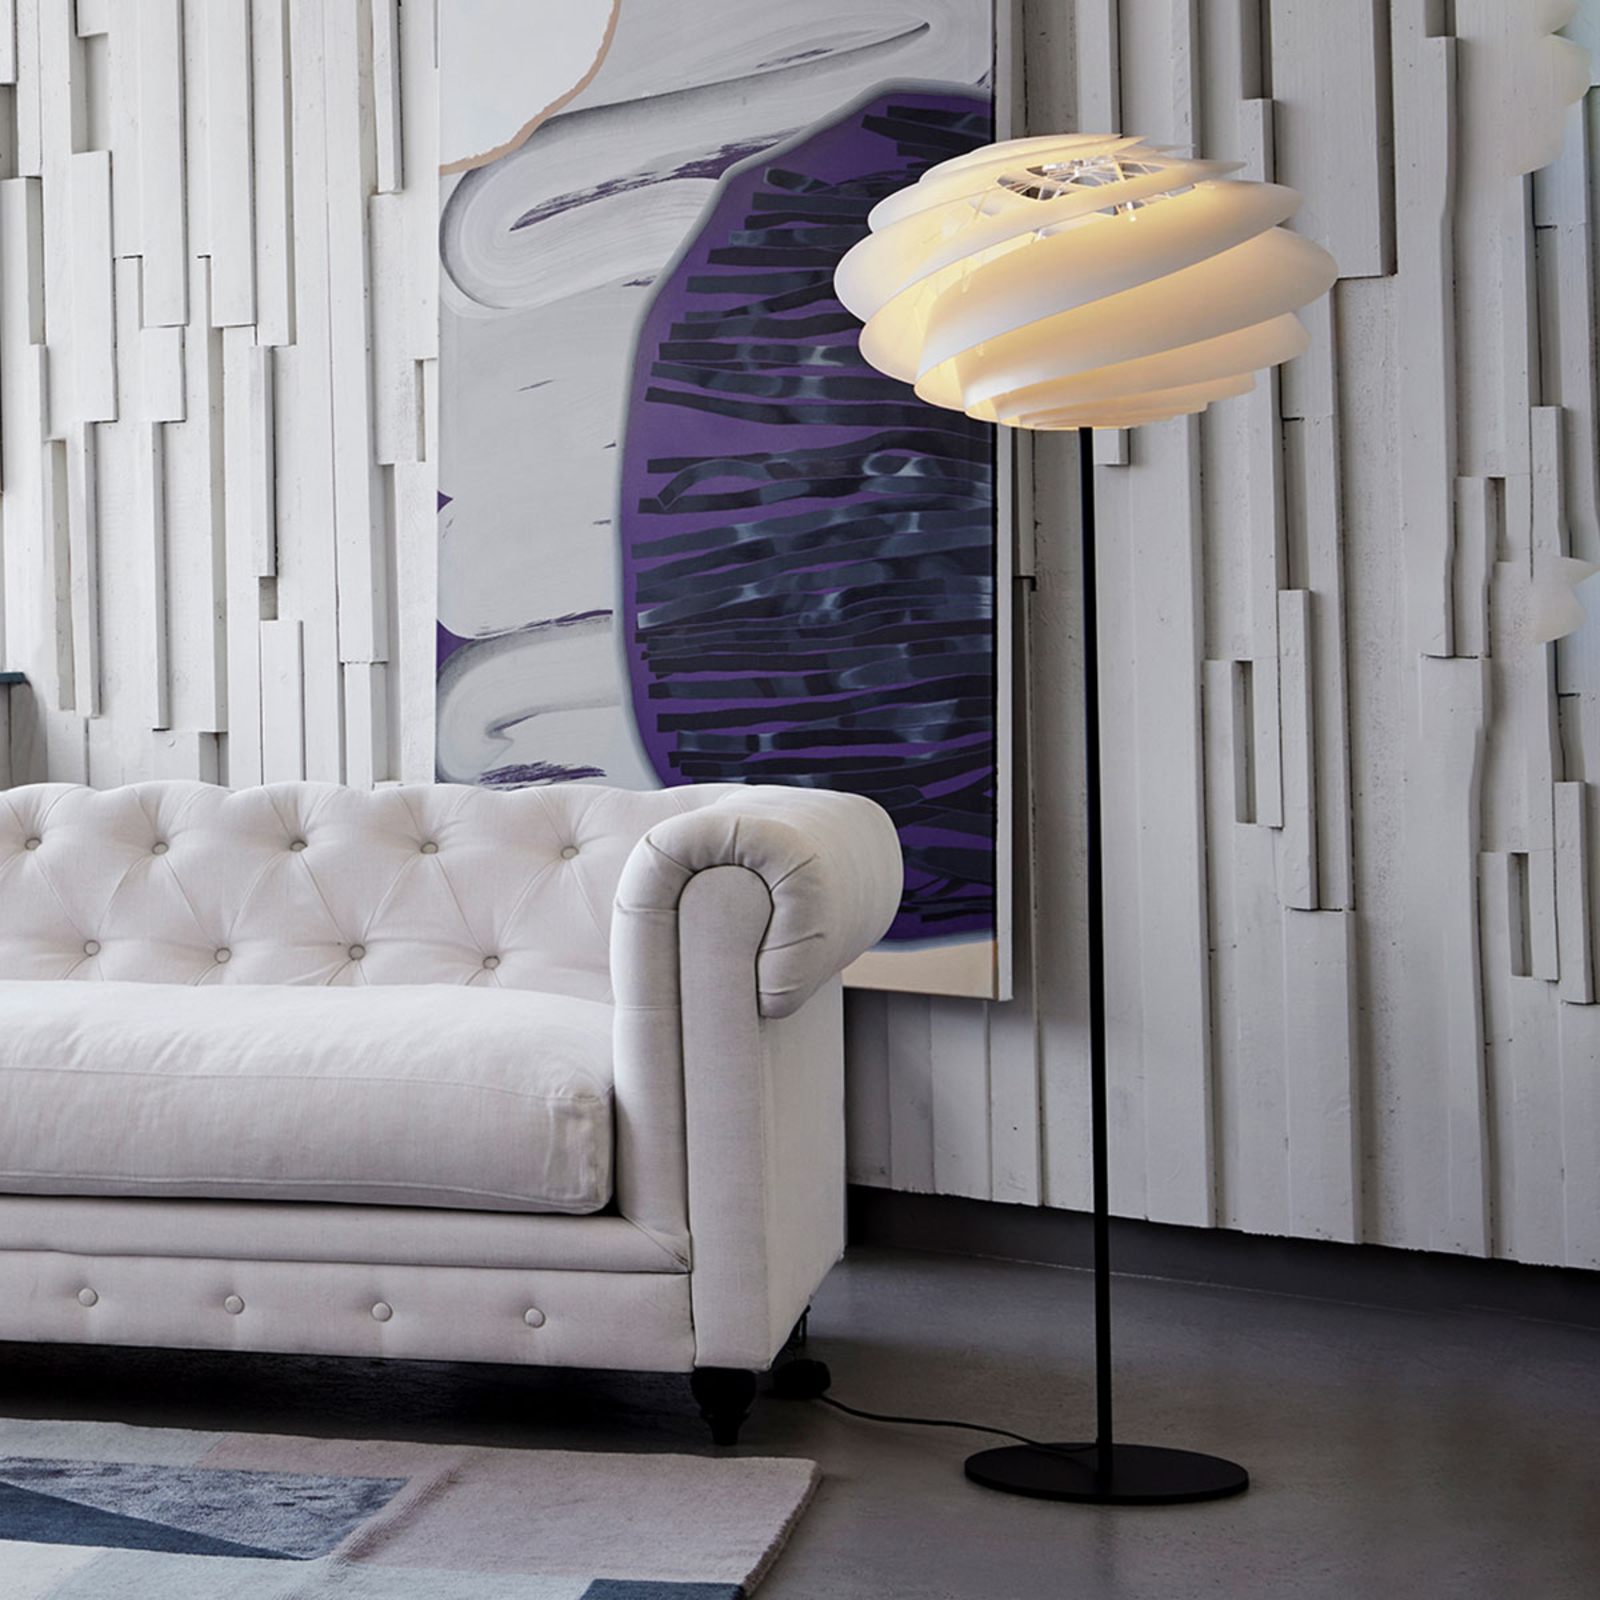 LE KLINT Swirl - witte design vloerlamp